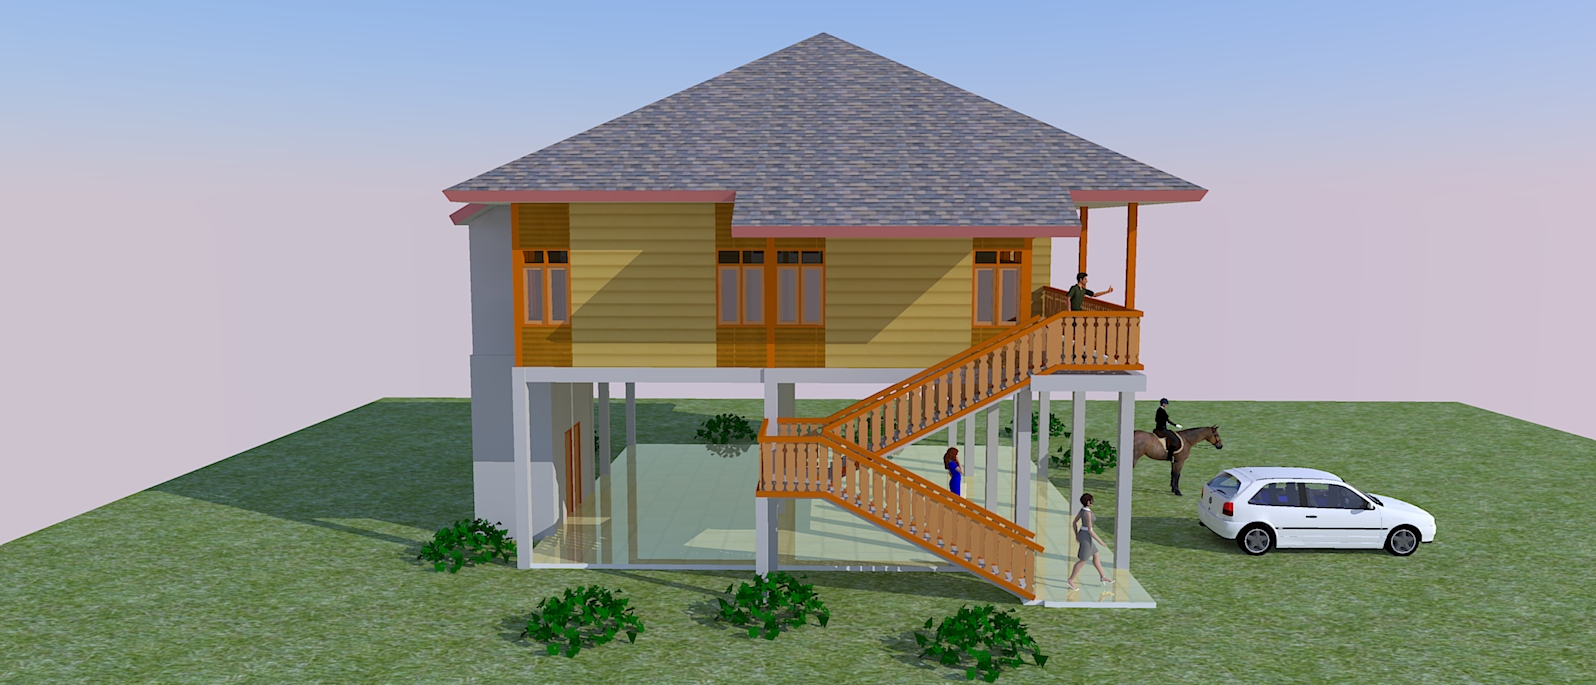 Rumah Kayu | Jasa Pembuatan Site Plan